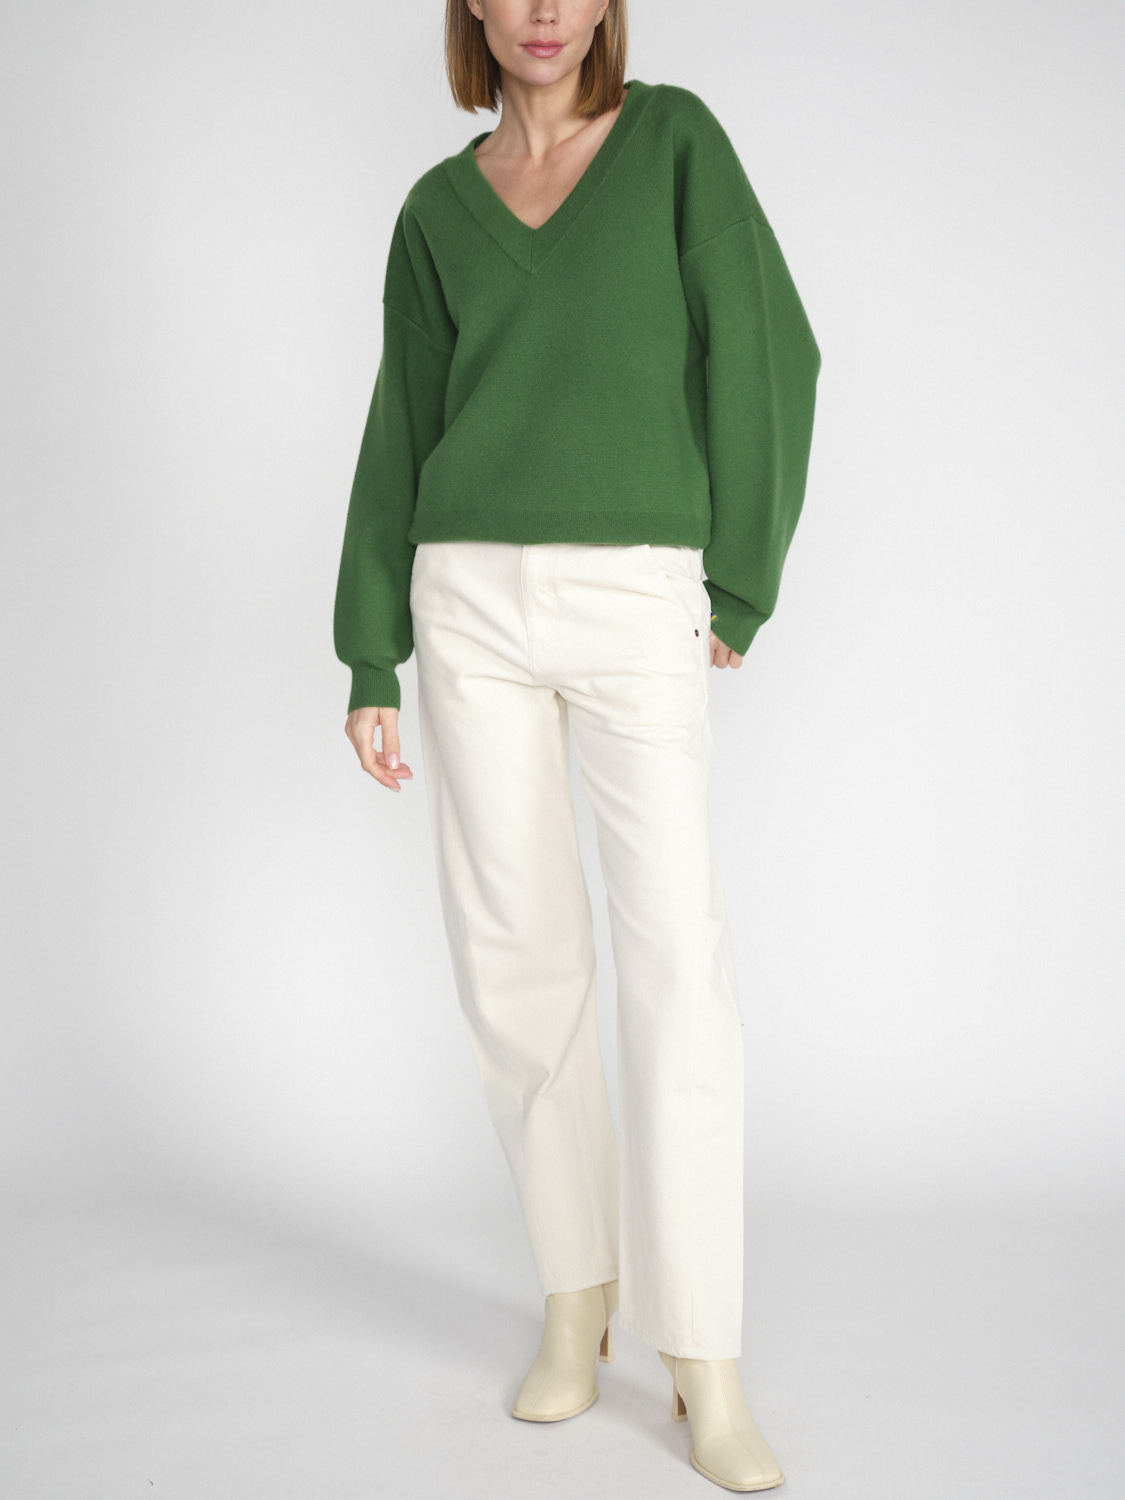 Extreme Cashmere N° 316 Lana - Maglia con scollo a V double-face in cashmere  verde Taglia unica